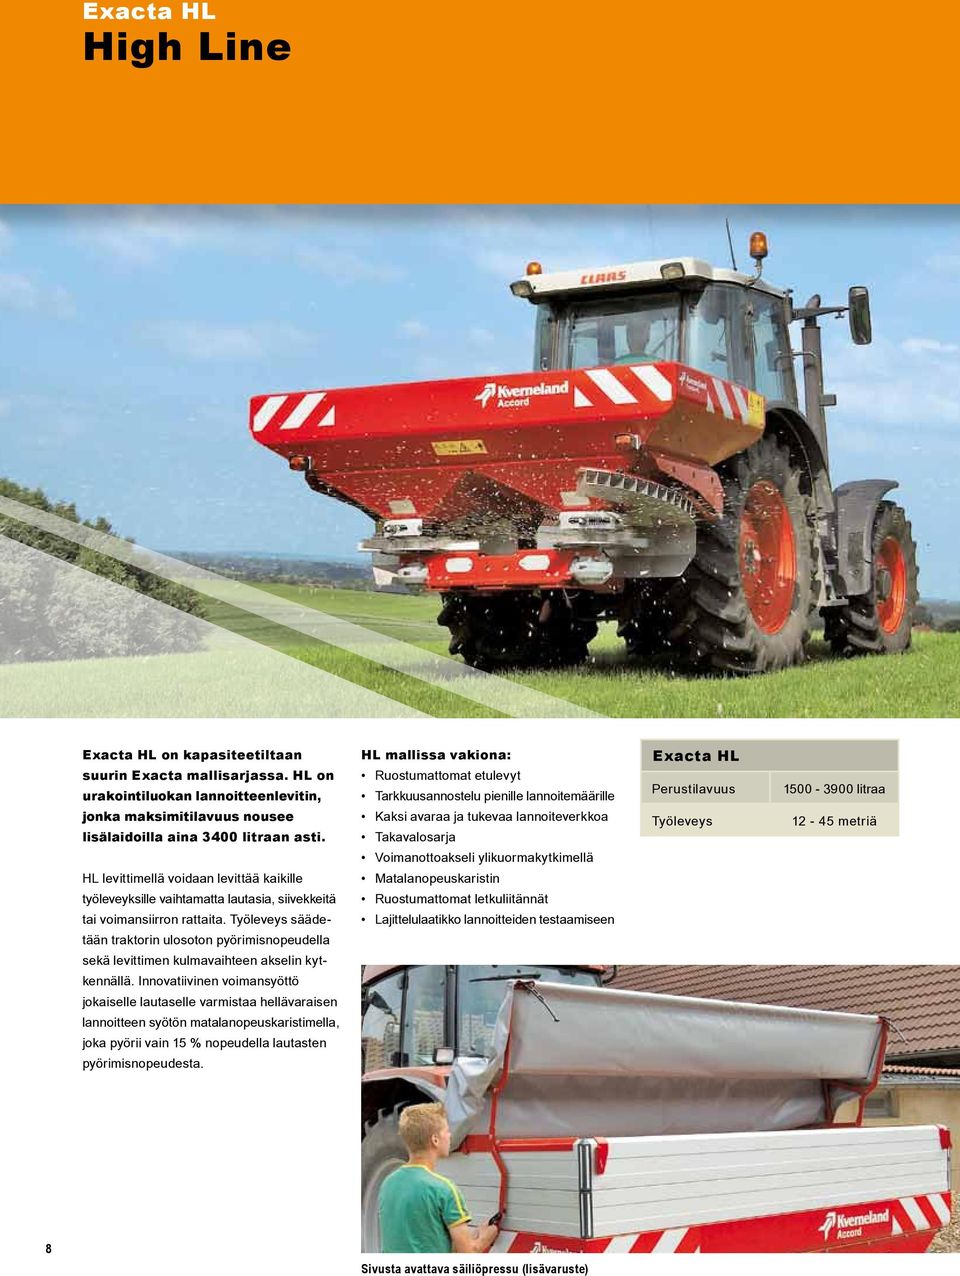 Työleveys säädetään traktorin ulosoton pyörimisnopeudella sekä levittimen kulmavaihteen akselin kytkennällä.